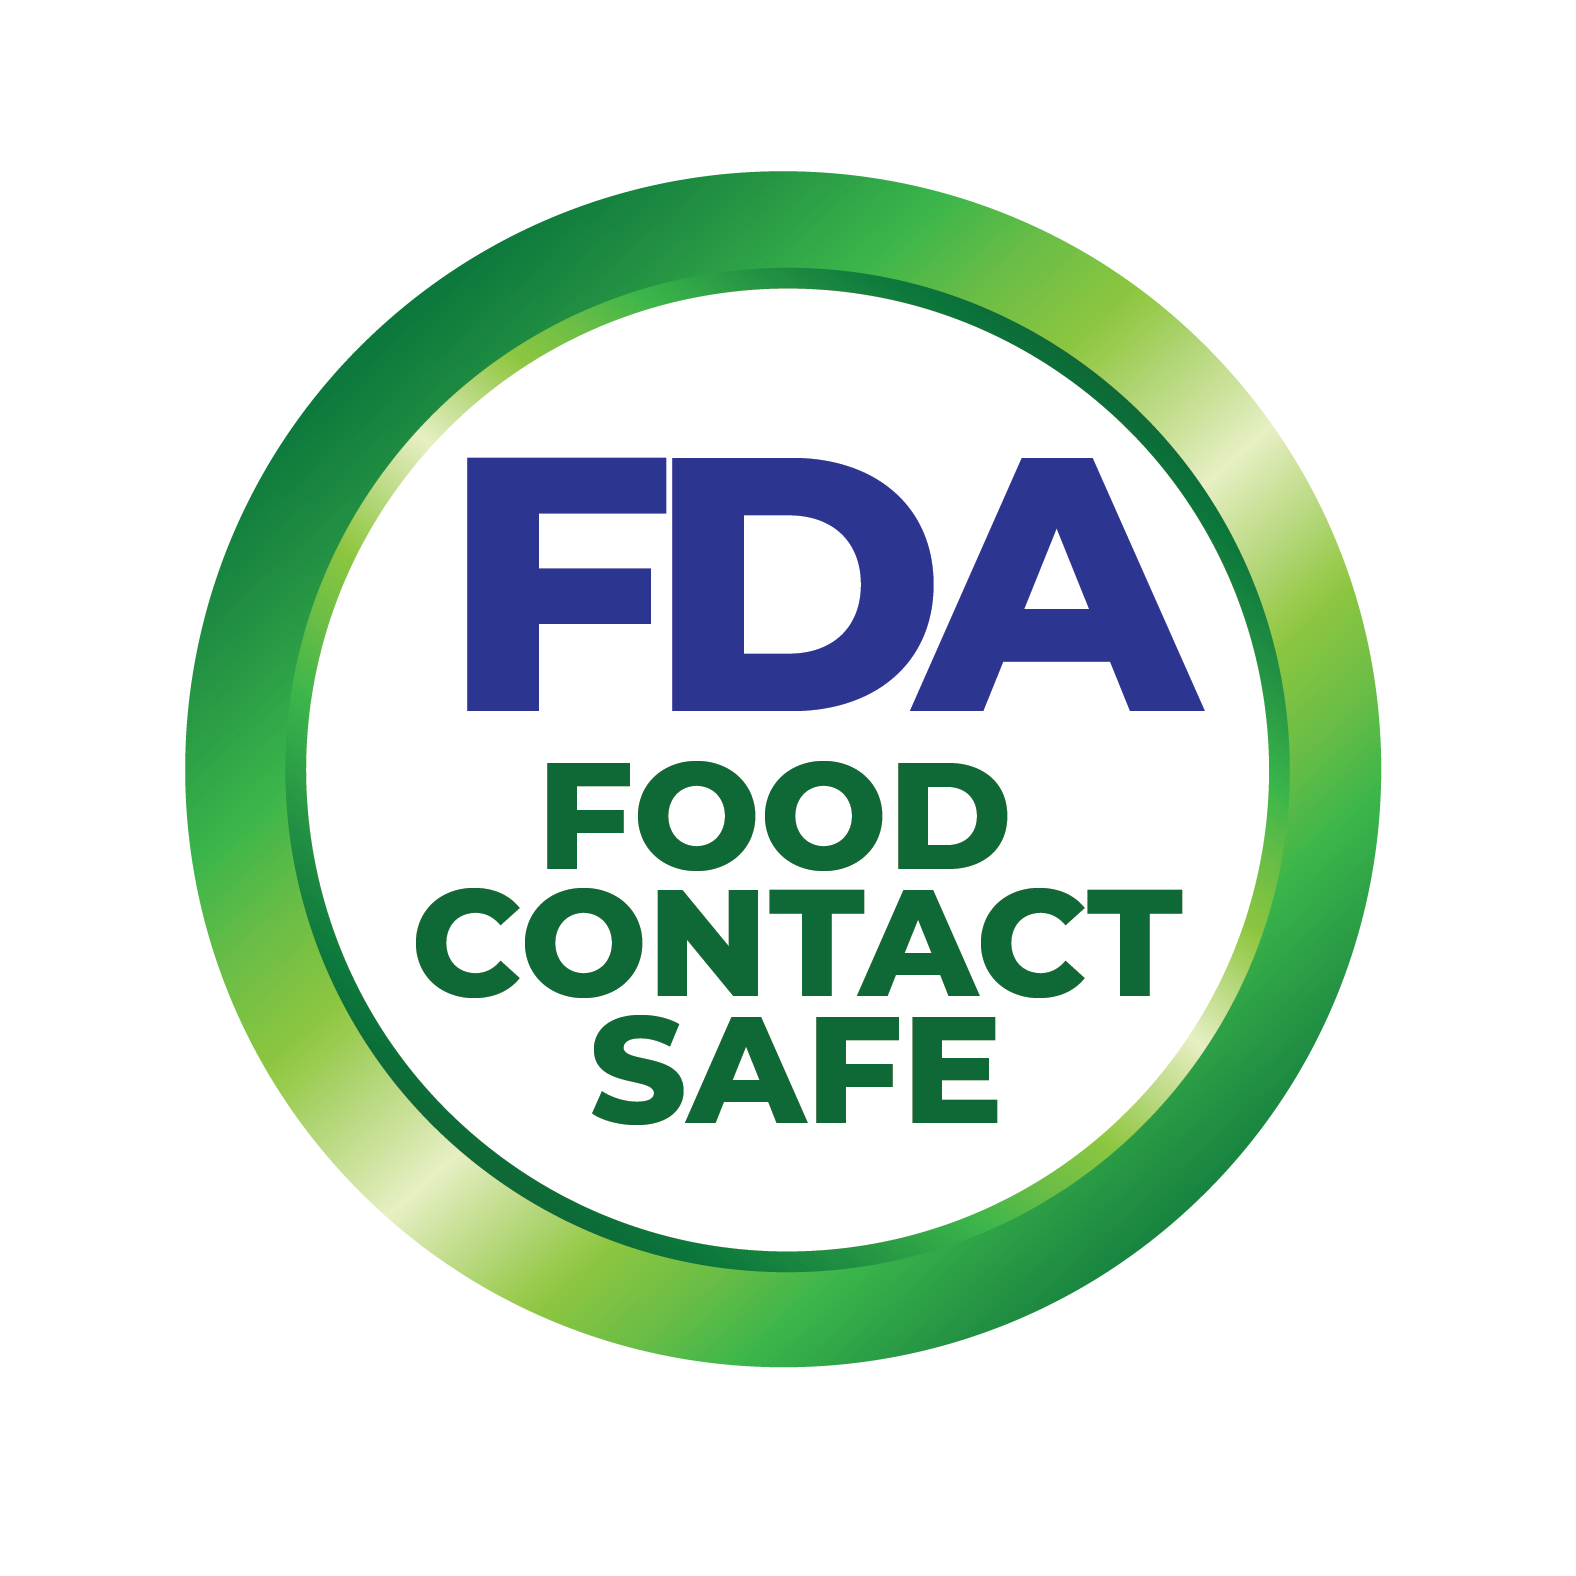 FDA Food Contact Safe 9b3f9ea5 ecb9 47be 83c7 bd7a3635c2c0